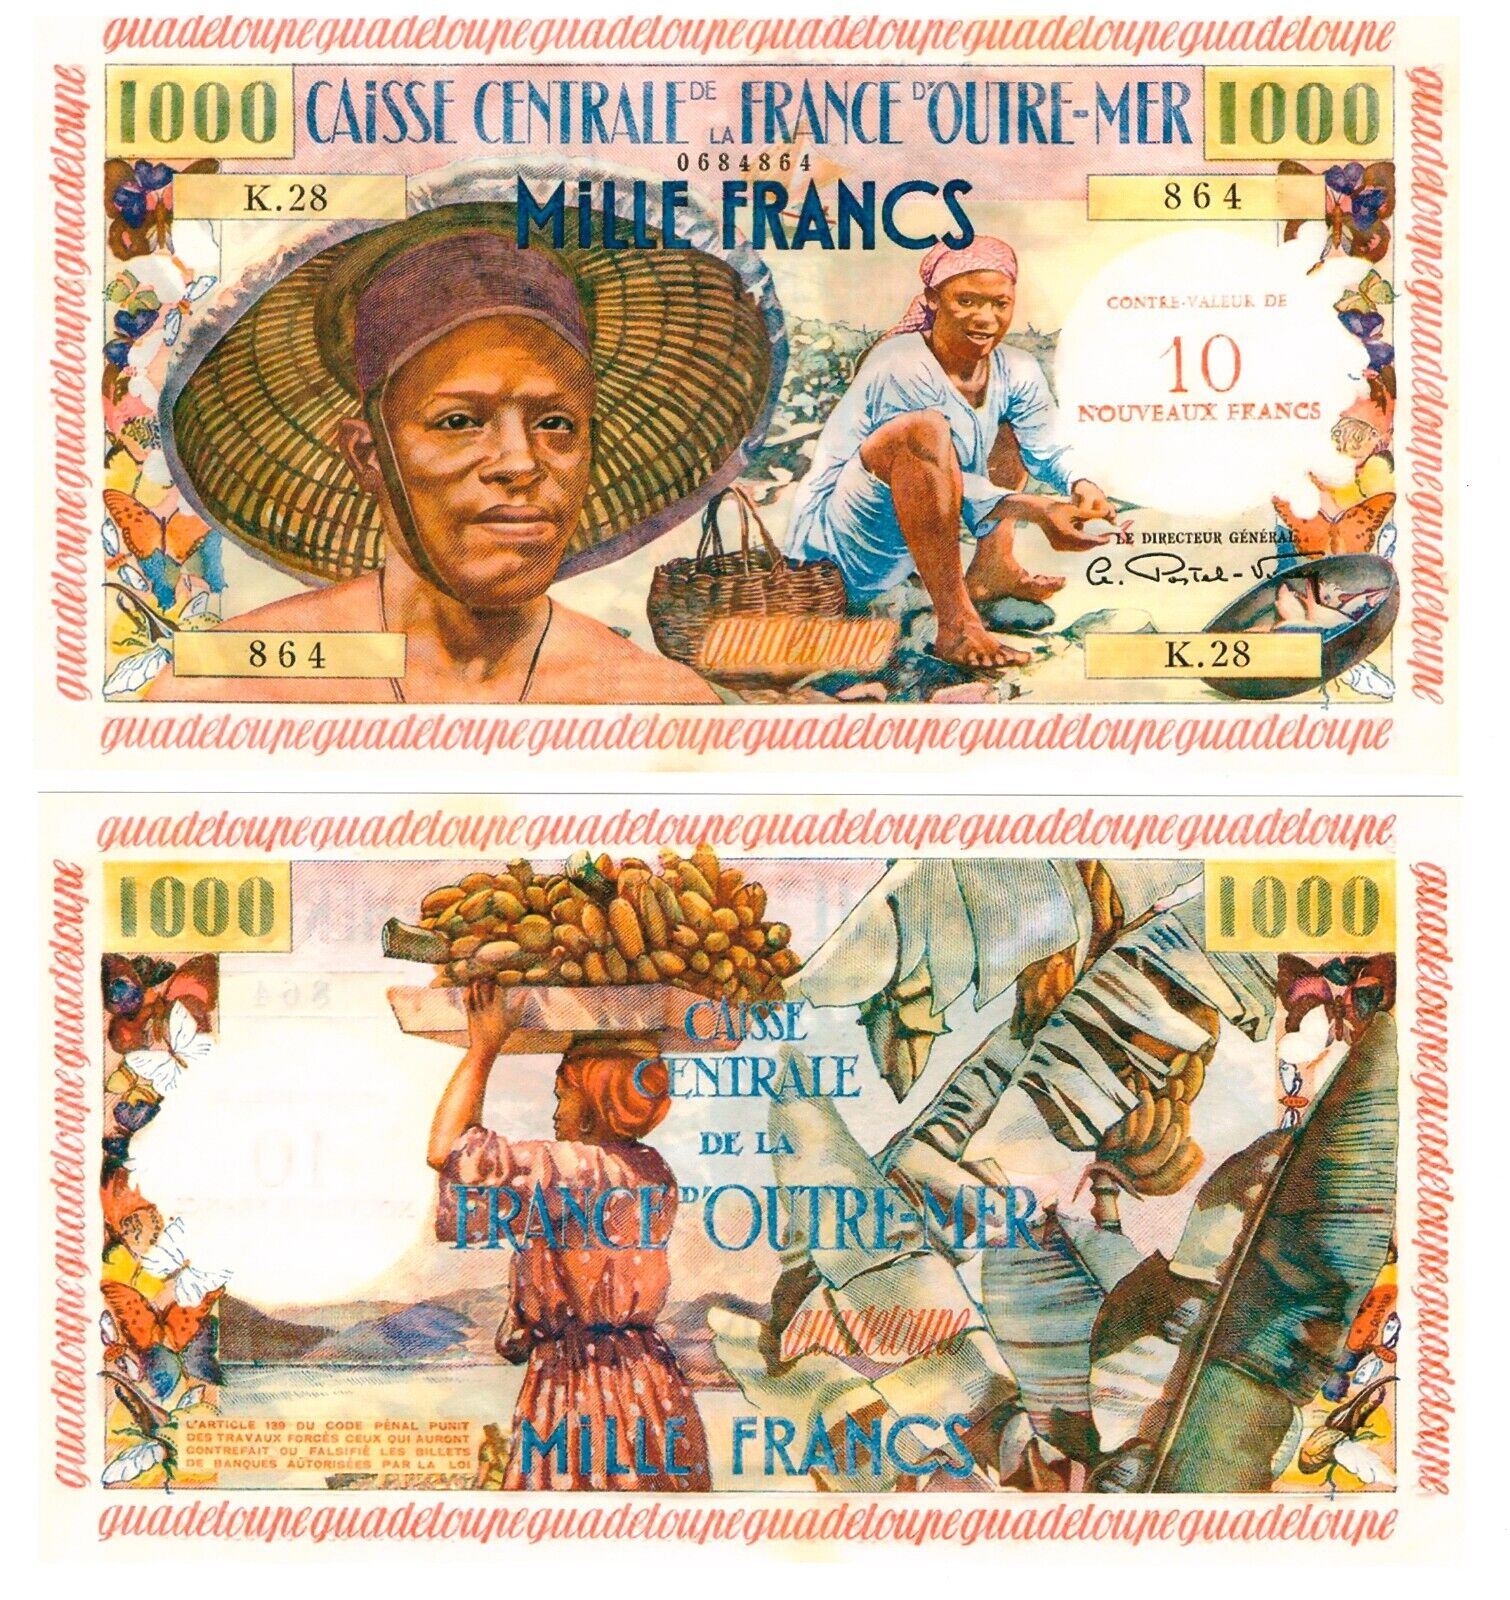 -r Reproduction Guadeloupe 10 Nouveaux Francs on 1000 Francs 1960 Pick #43 2356R